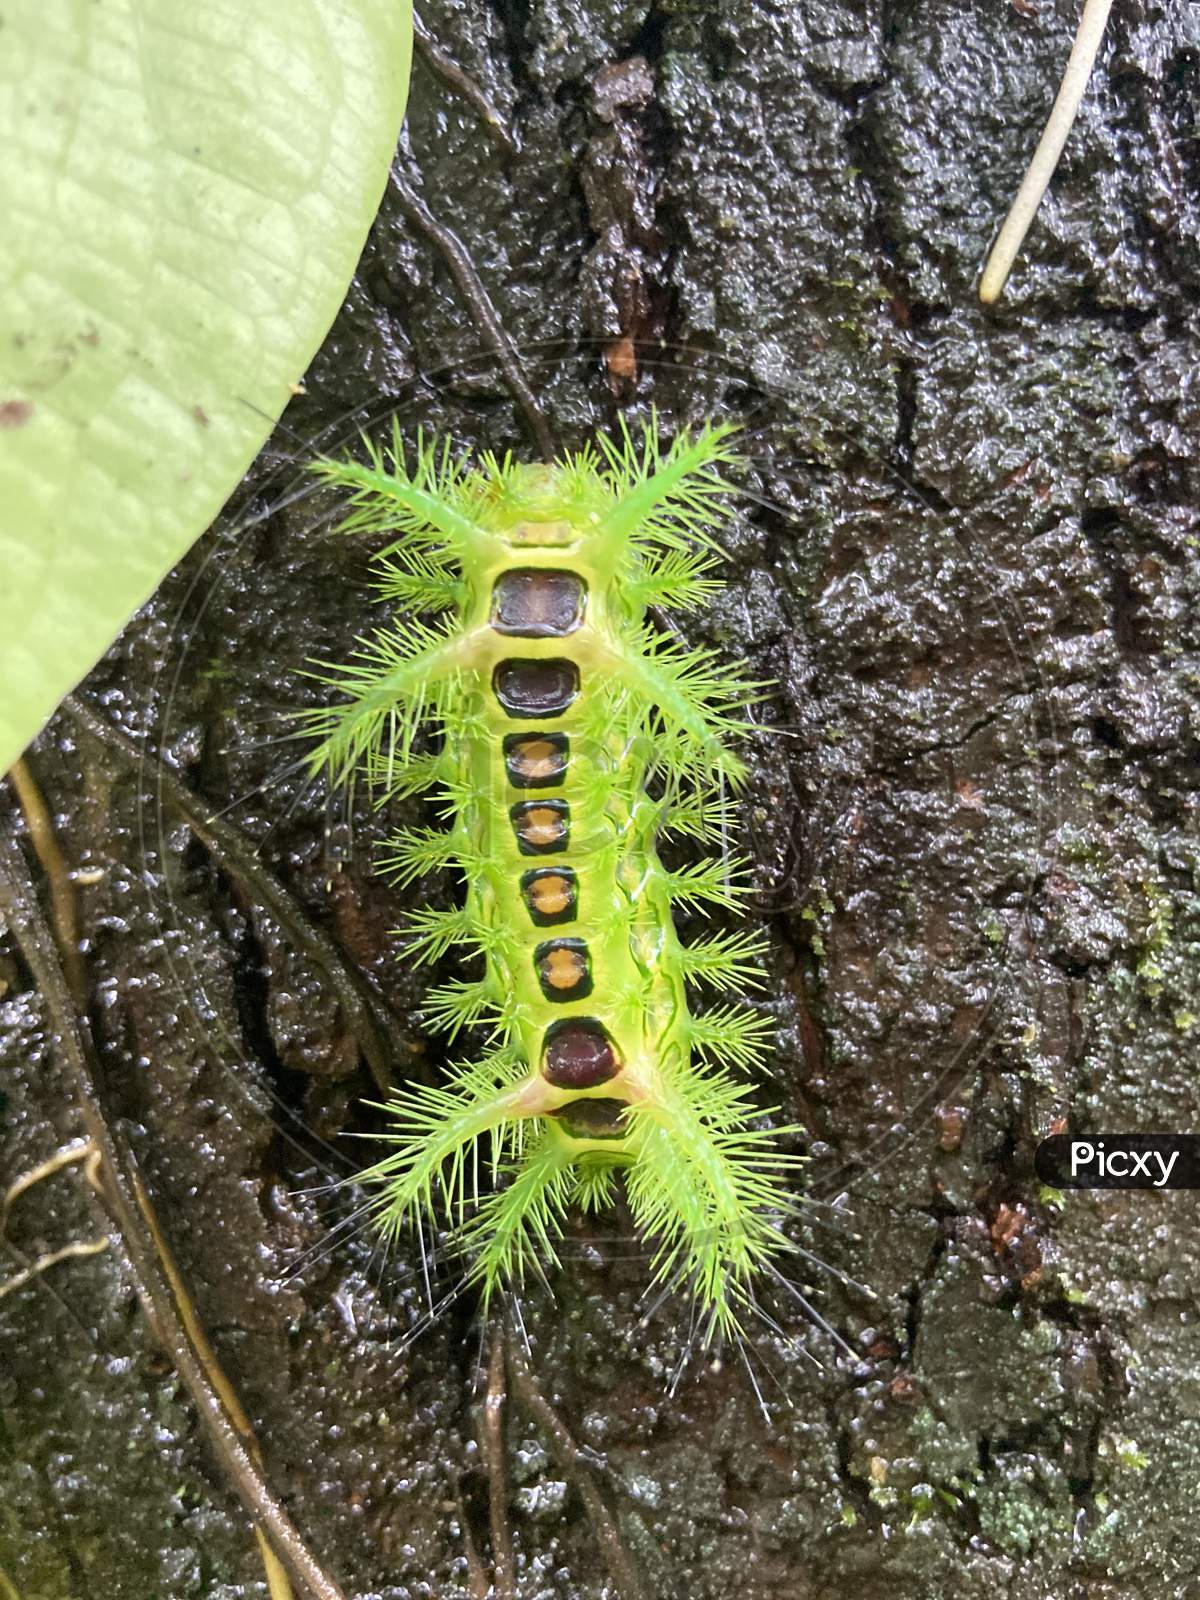 Unique caterpillar